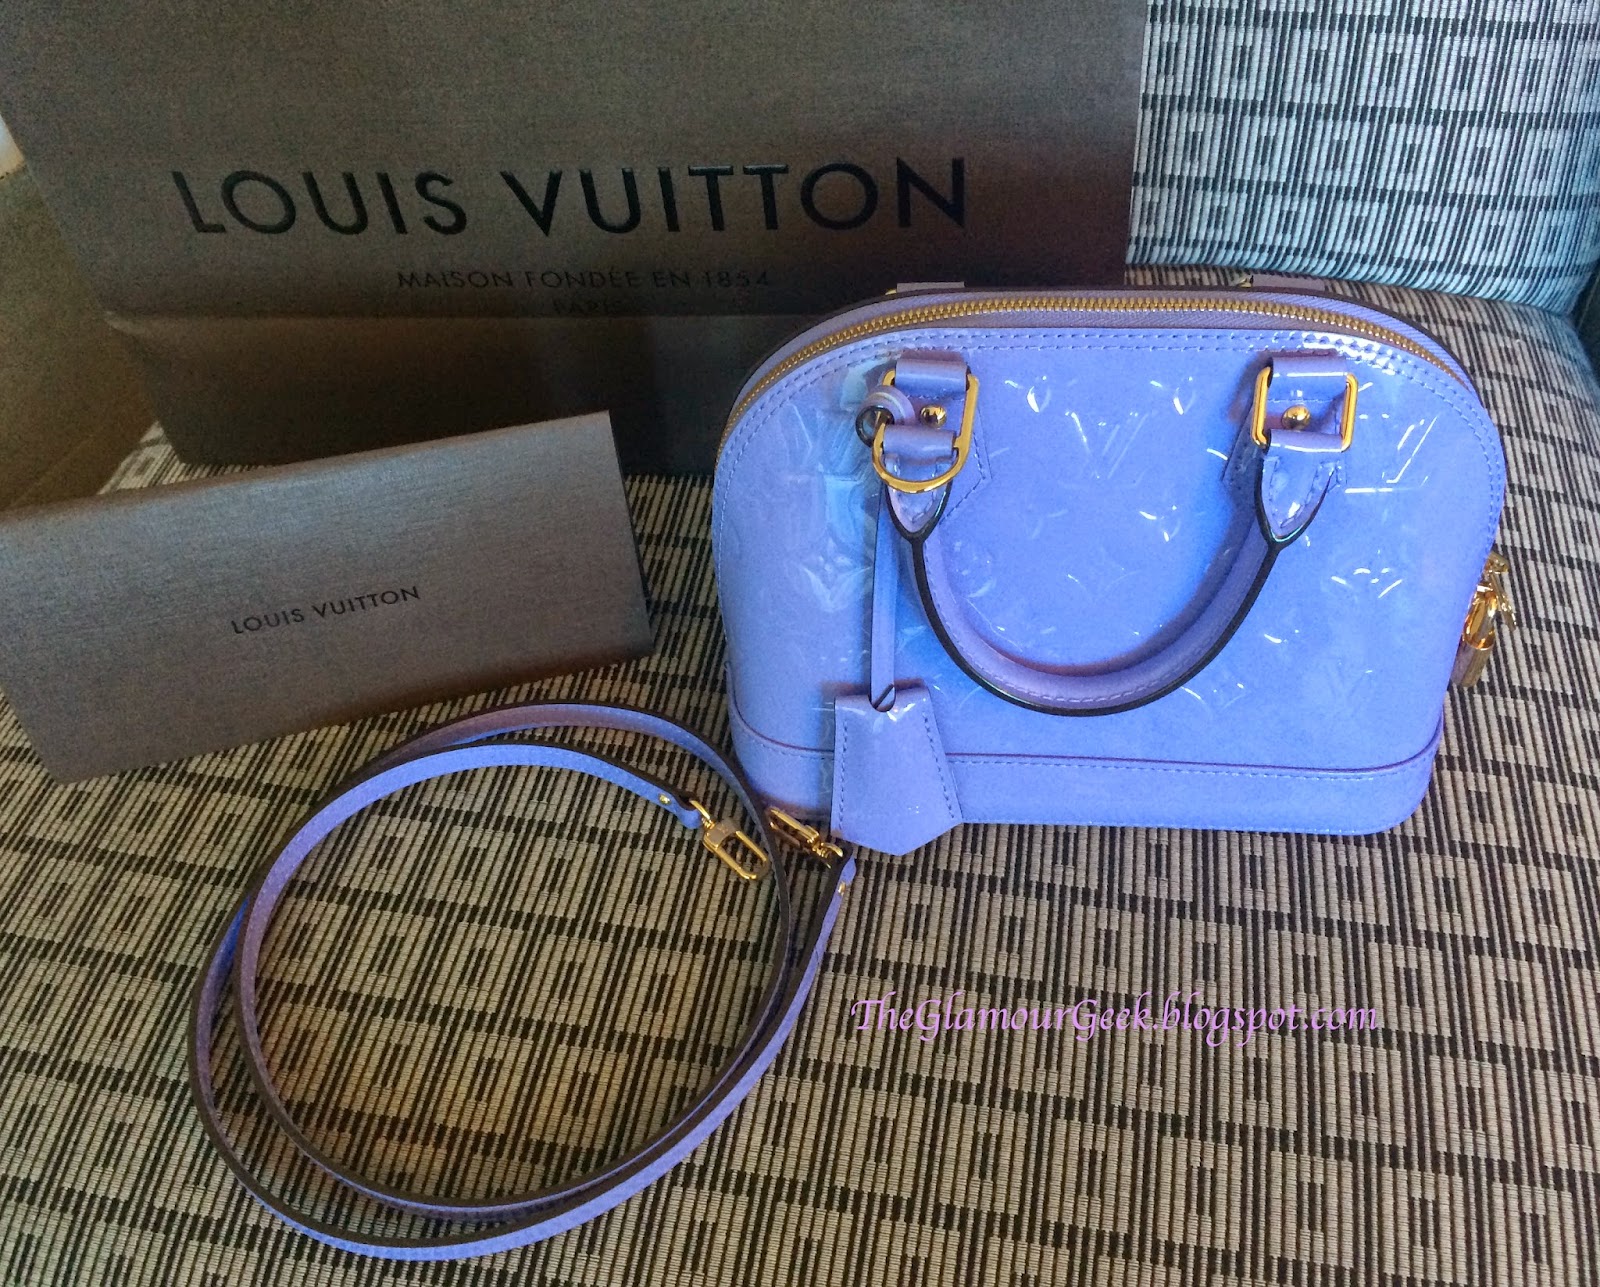 Louis Vuitton Alma BB Bag Review 